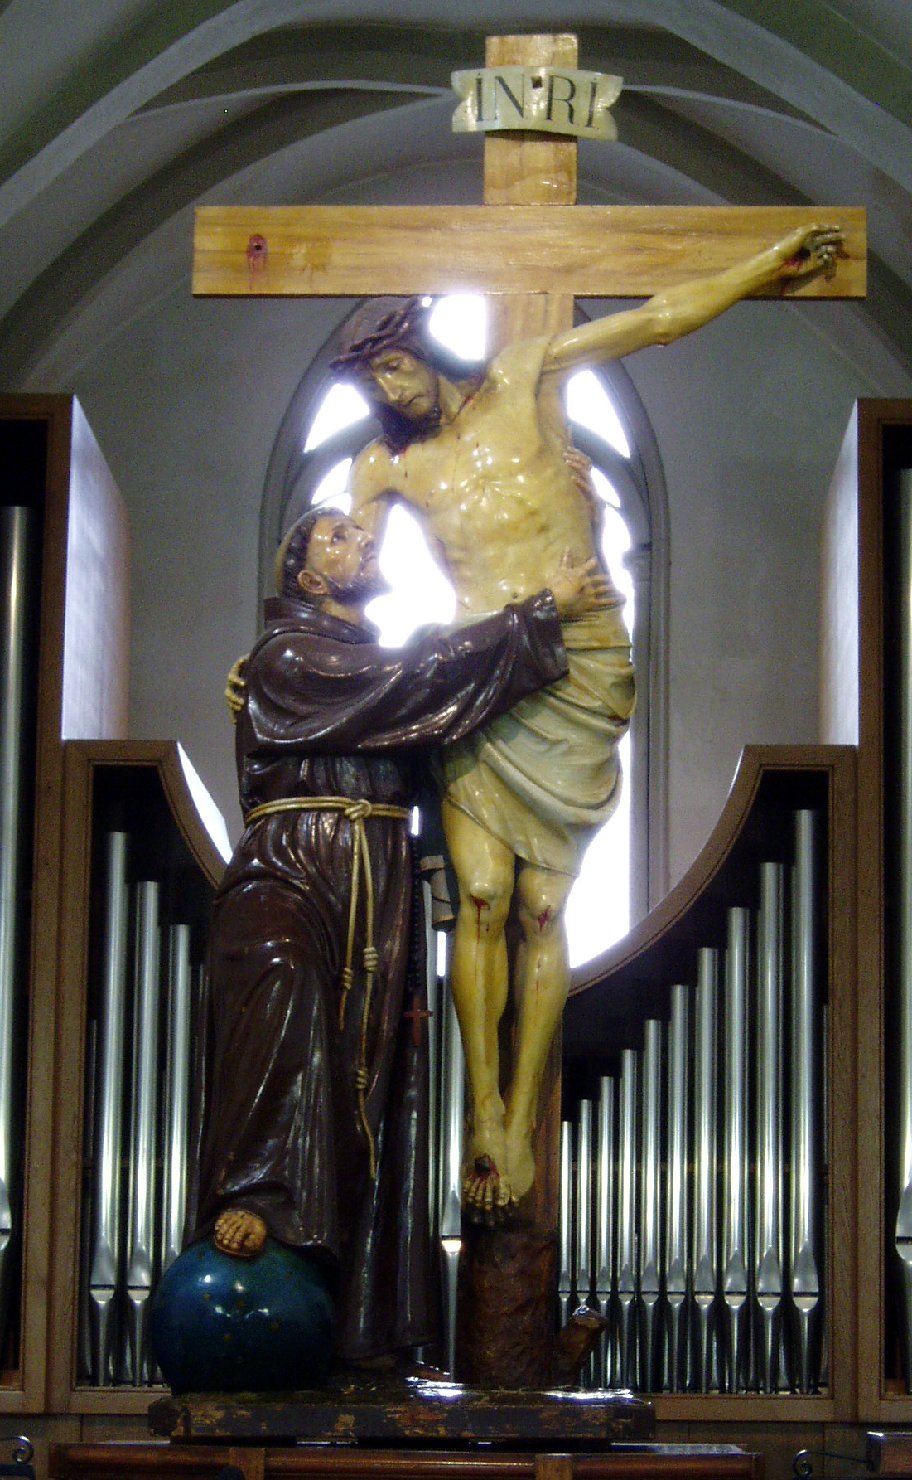 San francesco d'assisi abbraccia cristo crocifisso (statua)